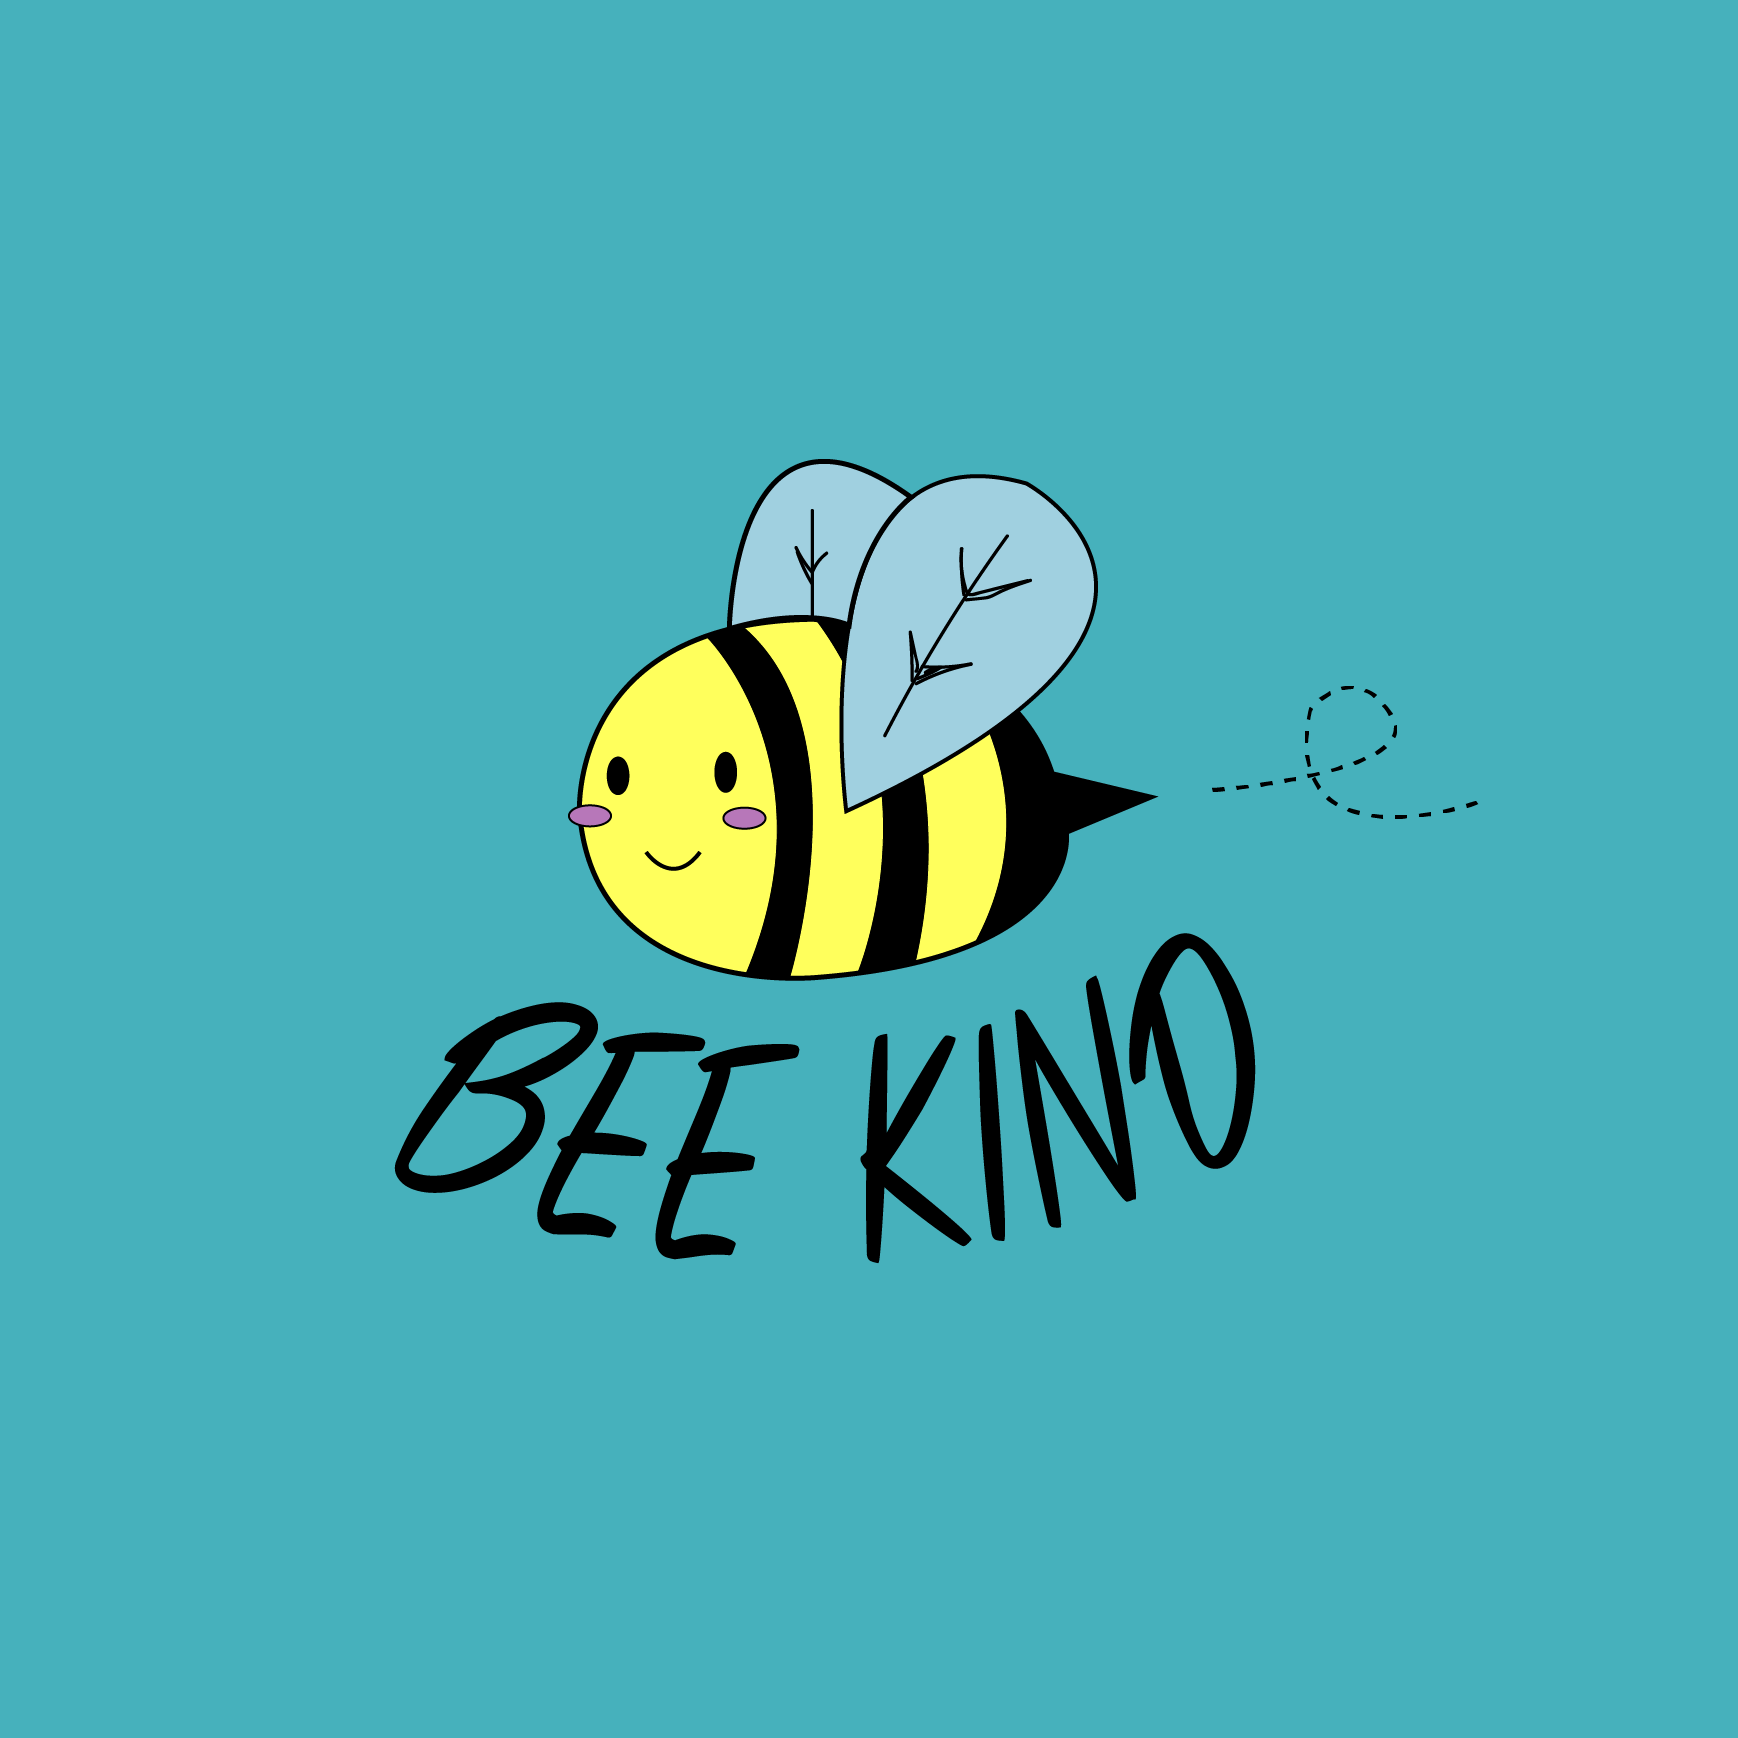 Bee Kind - Kid Organic Cotton Sweatshirt